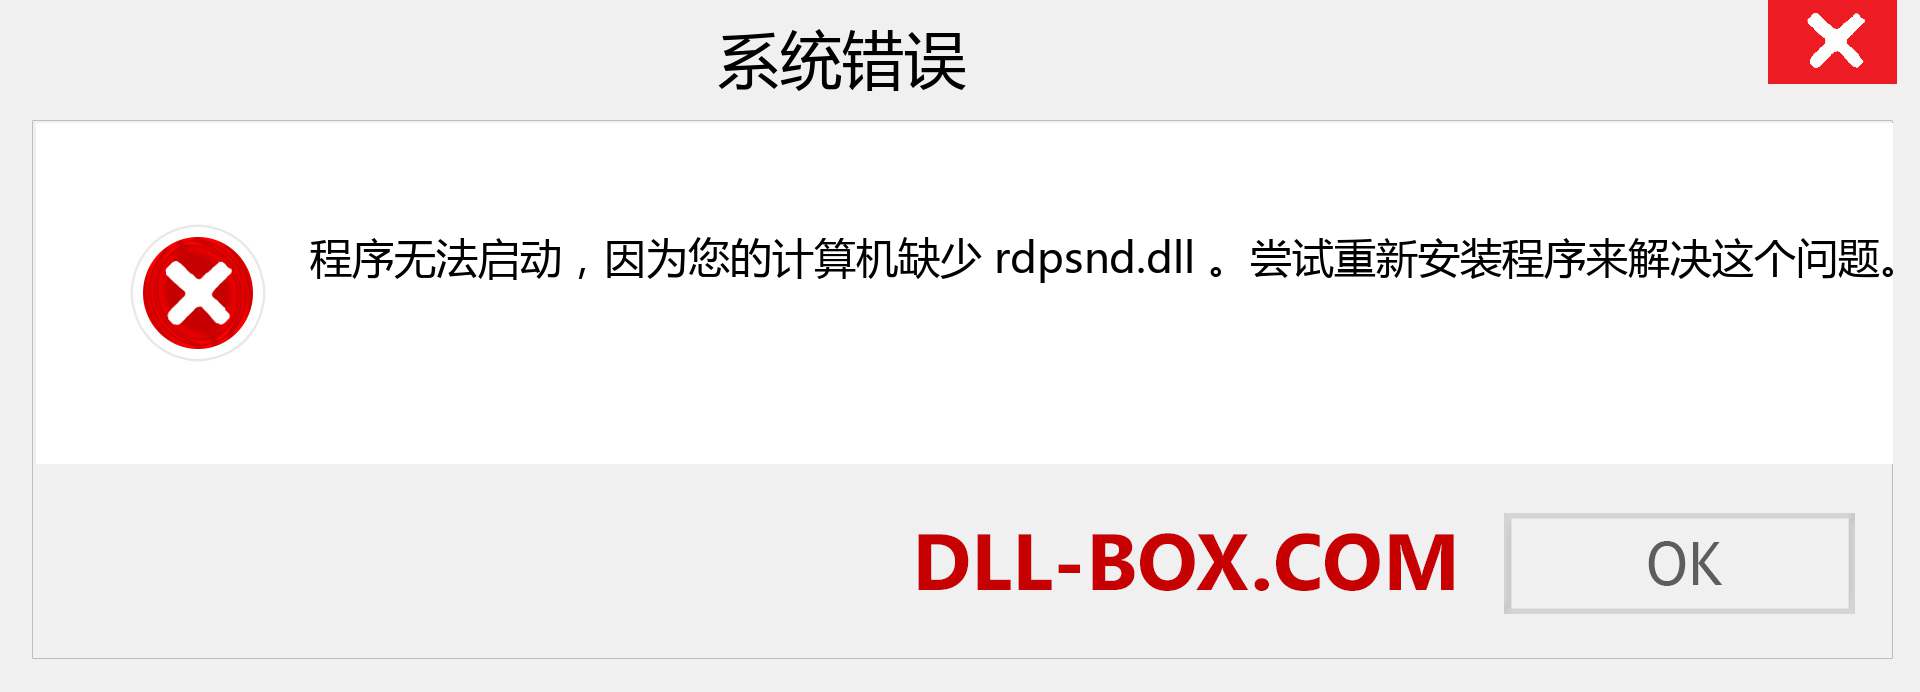 rdpsnd.dll 文件丢失？。 适用于 Windows 7、8、10 的下载 - 修复 Windows、照片、图像上的 rdpsnd dll 丢失错误